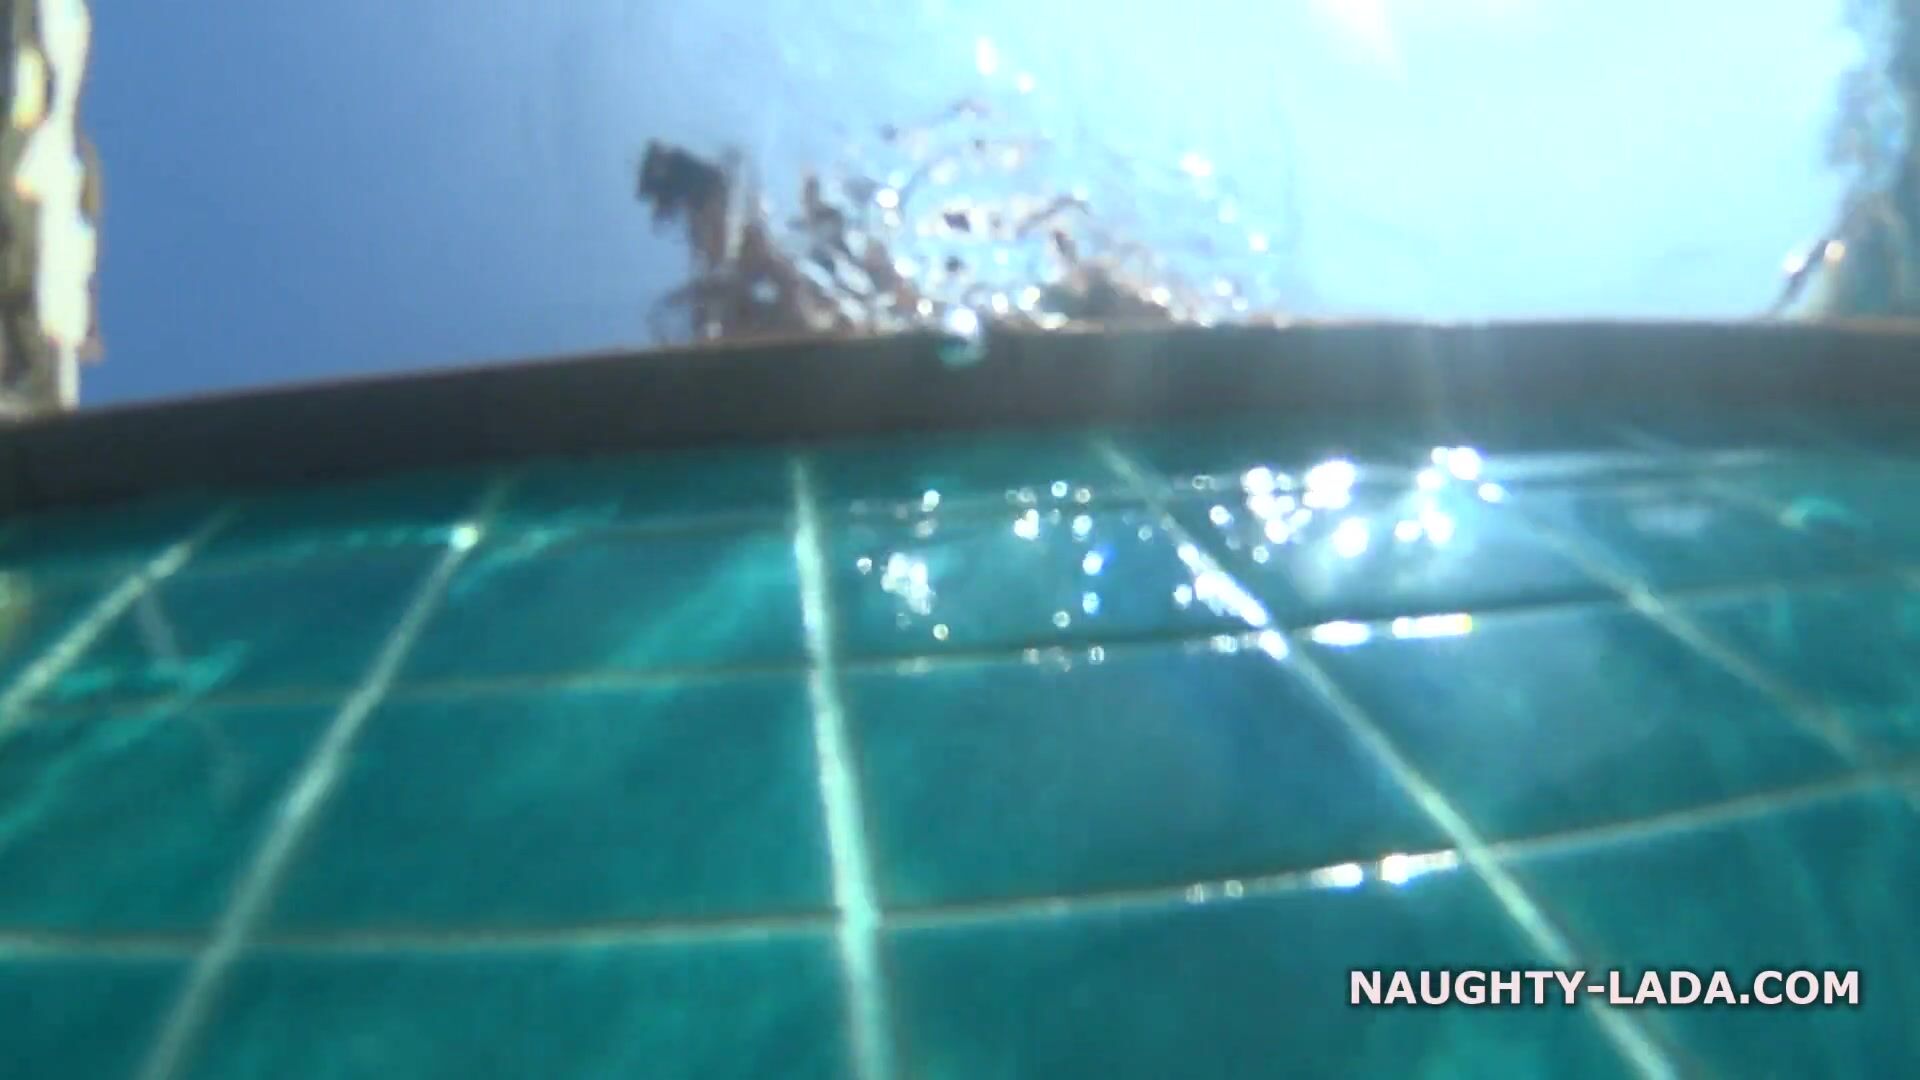 Naughty Lada - Nude in swimming pool